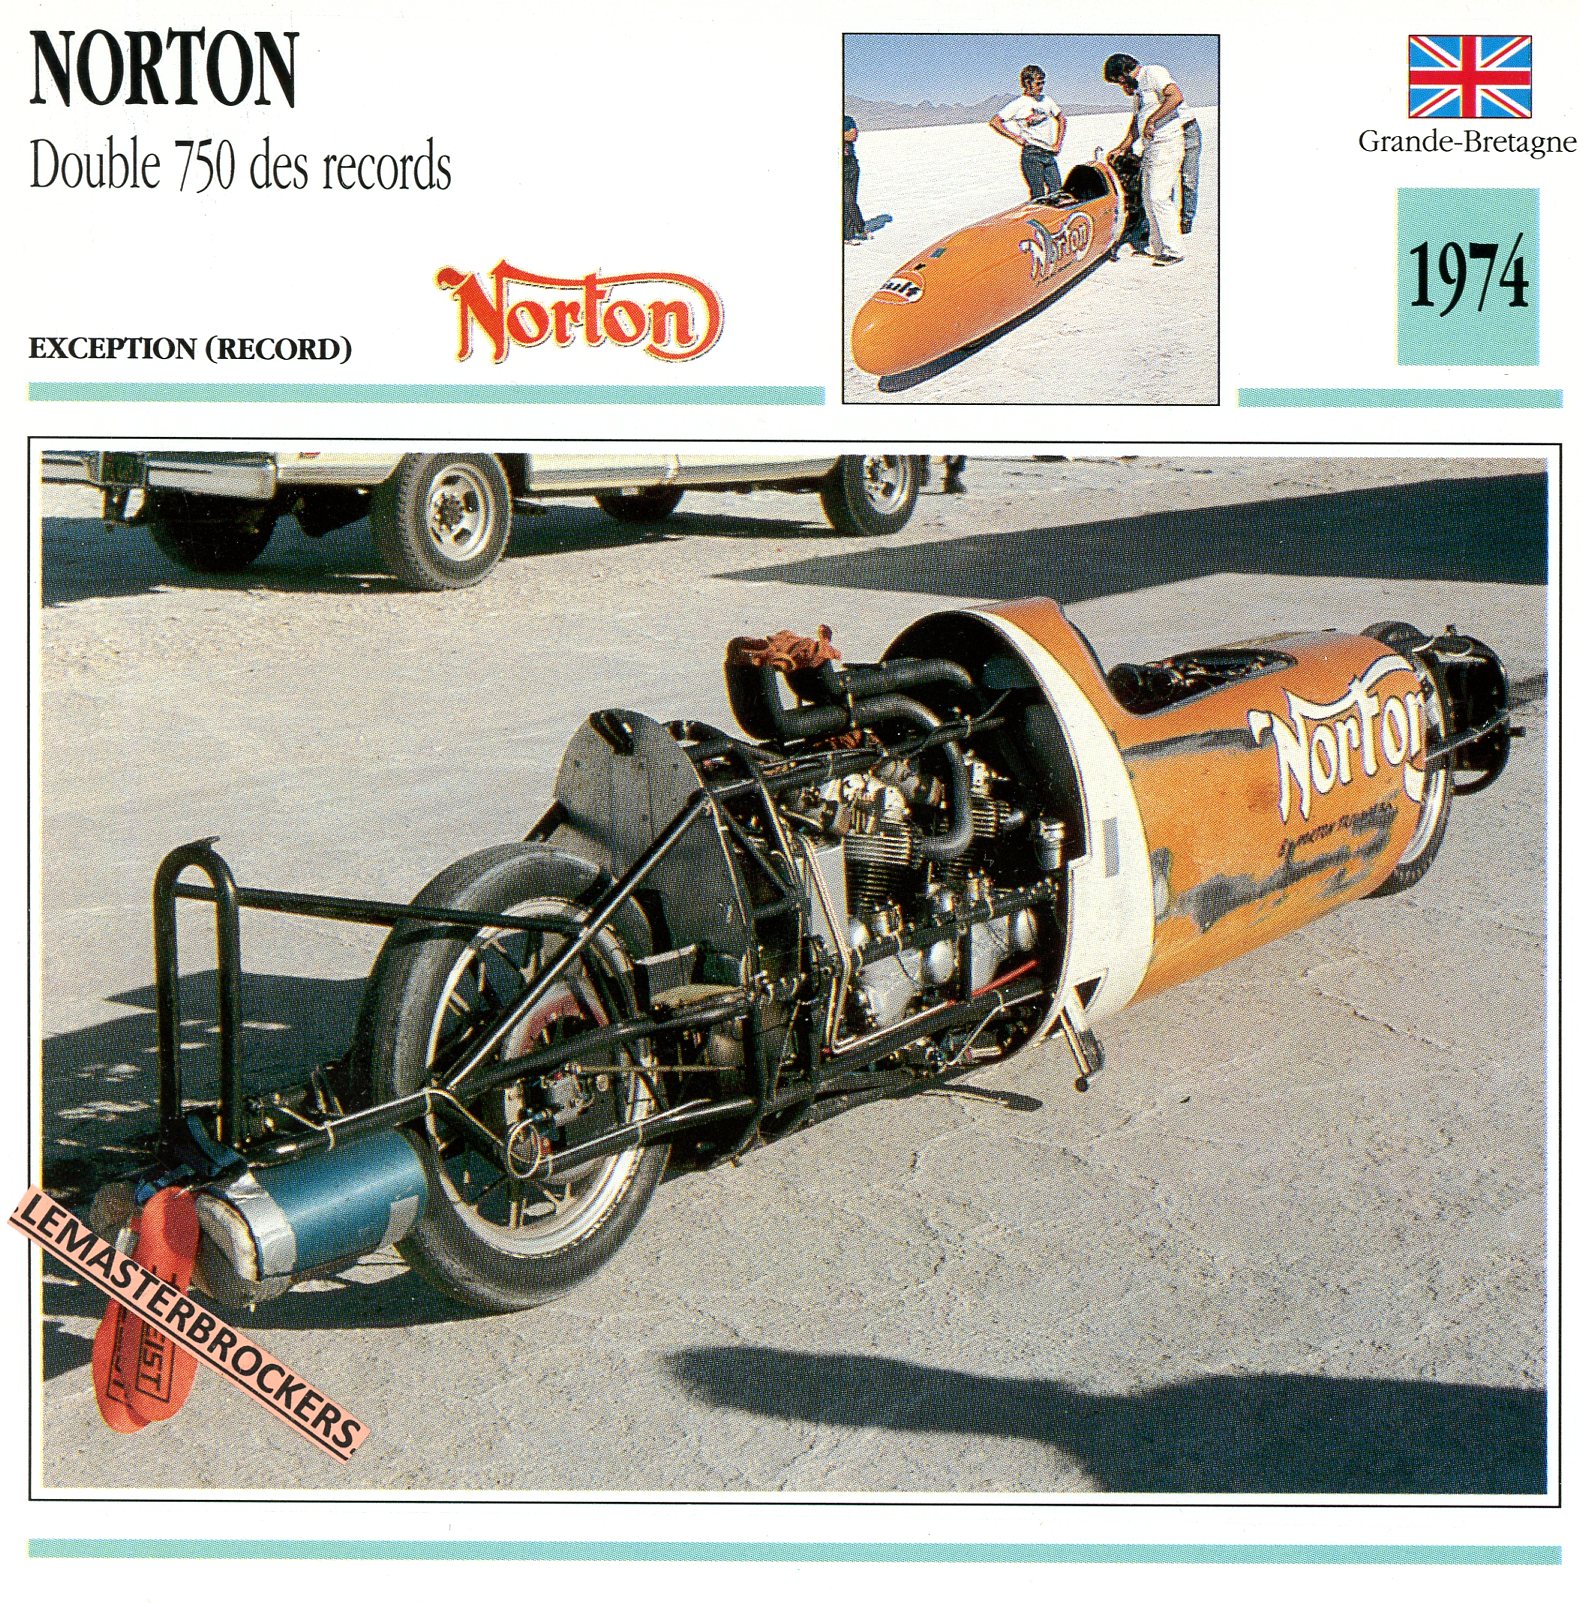 NORTON-DOUBLE-750-DES-RECORDS-1974-FICHE-MOTO-ATLAS-lemasterbrockers-CARD-MOTORCYCLE